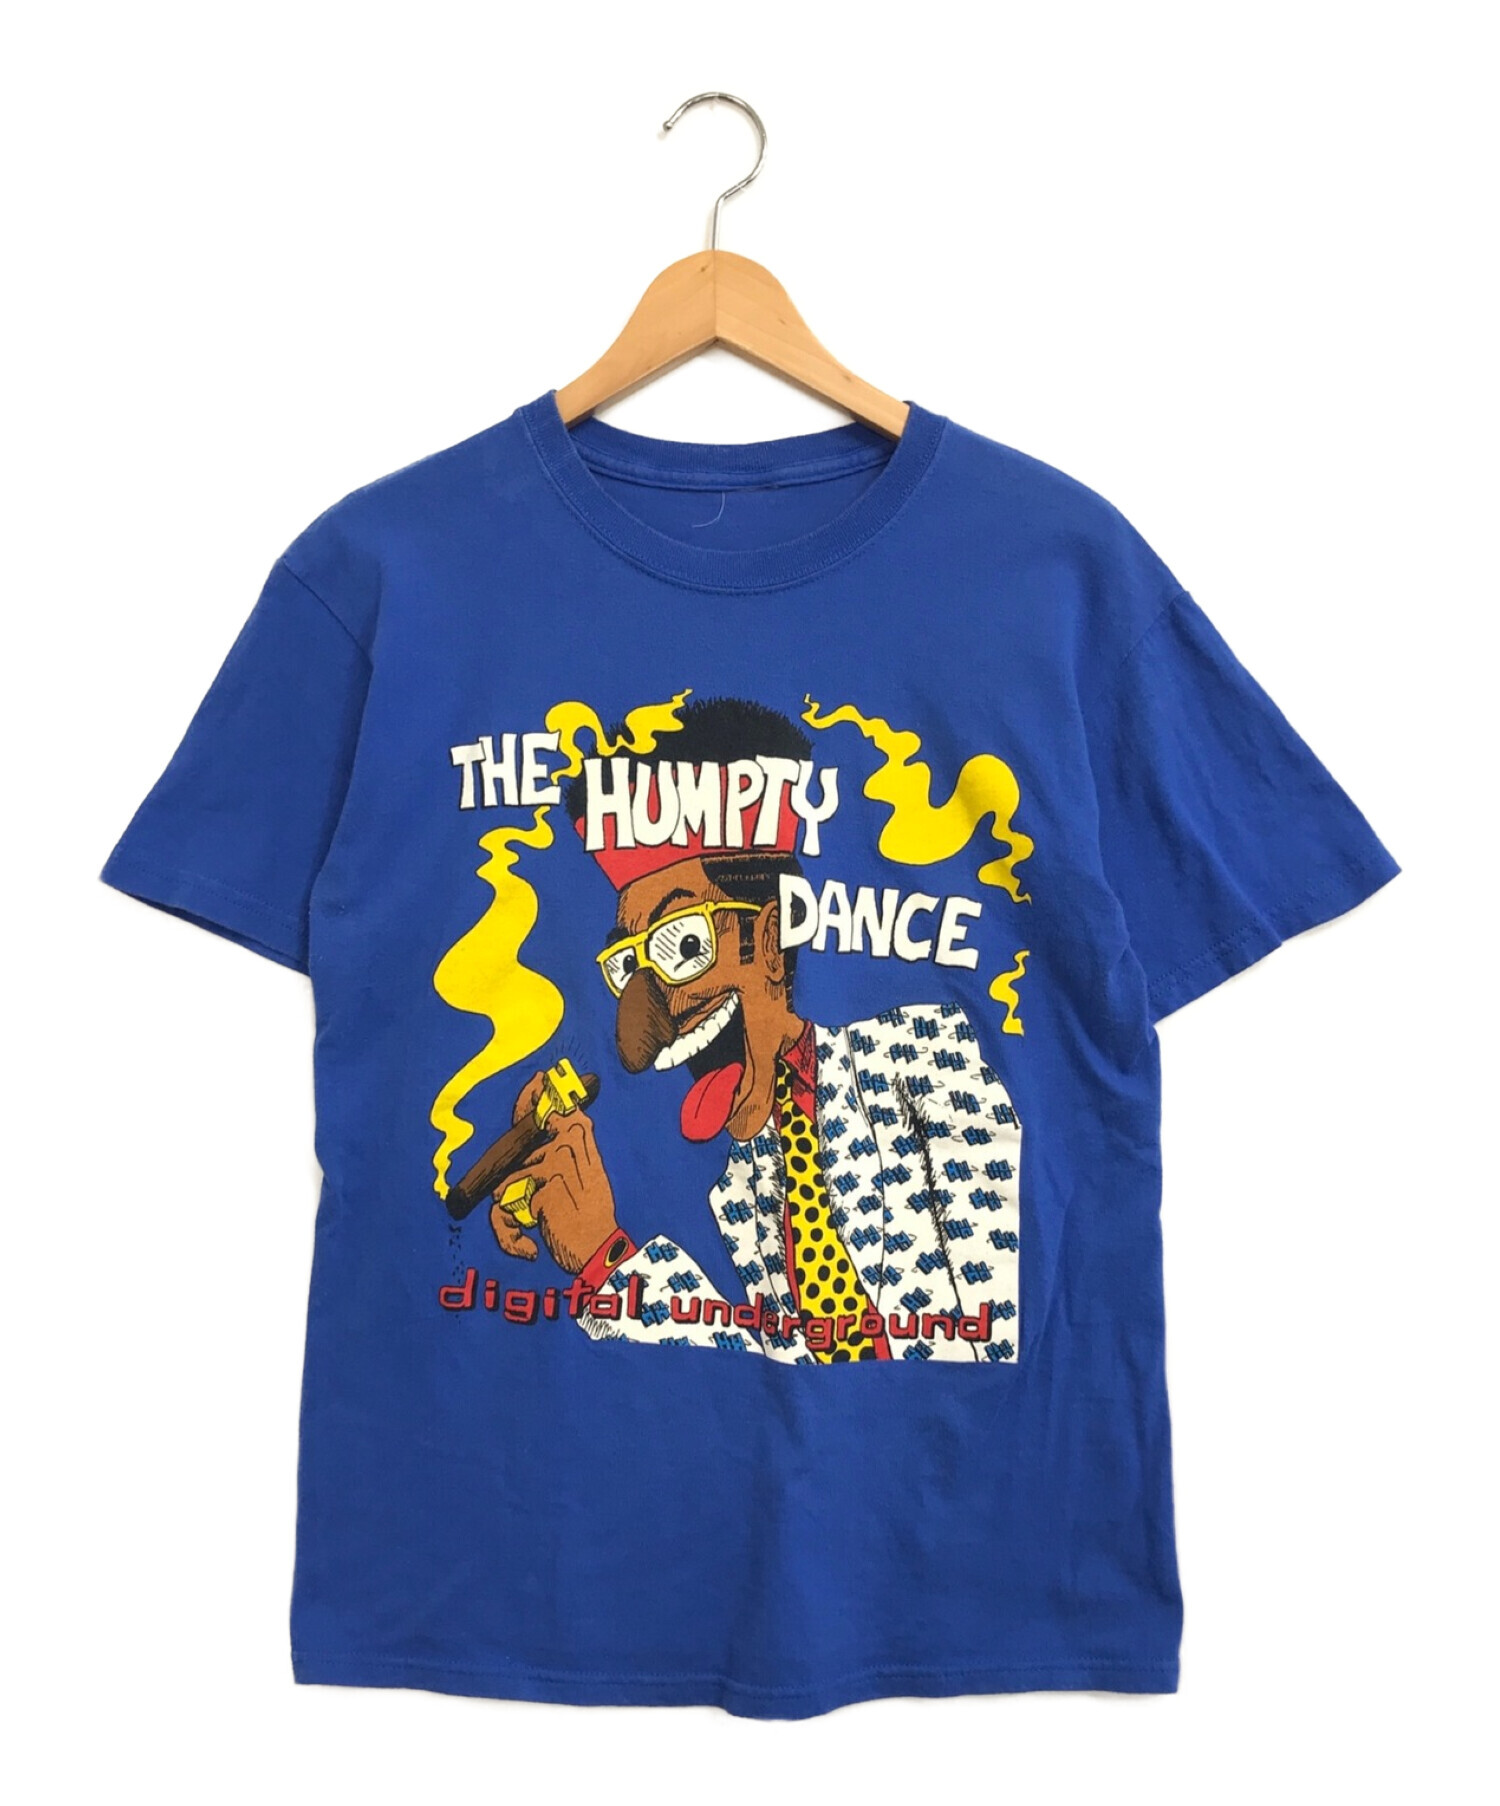 DIGITALUNDERGROUND Rap Tシャツ - Tシャツ/カットソー(半袖/袖なし)